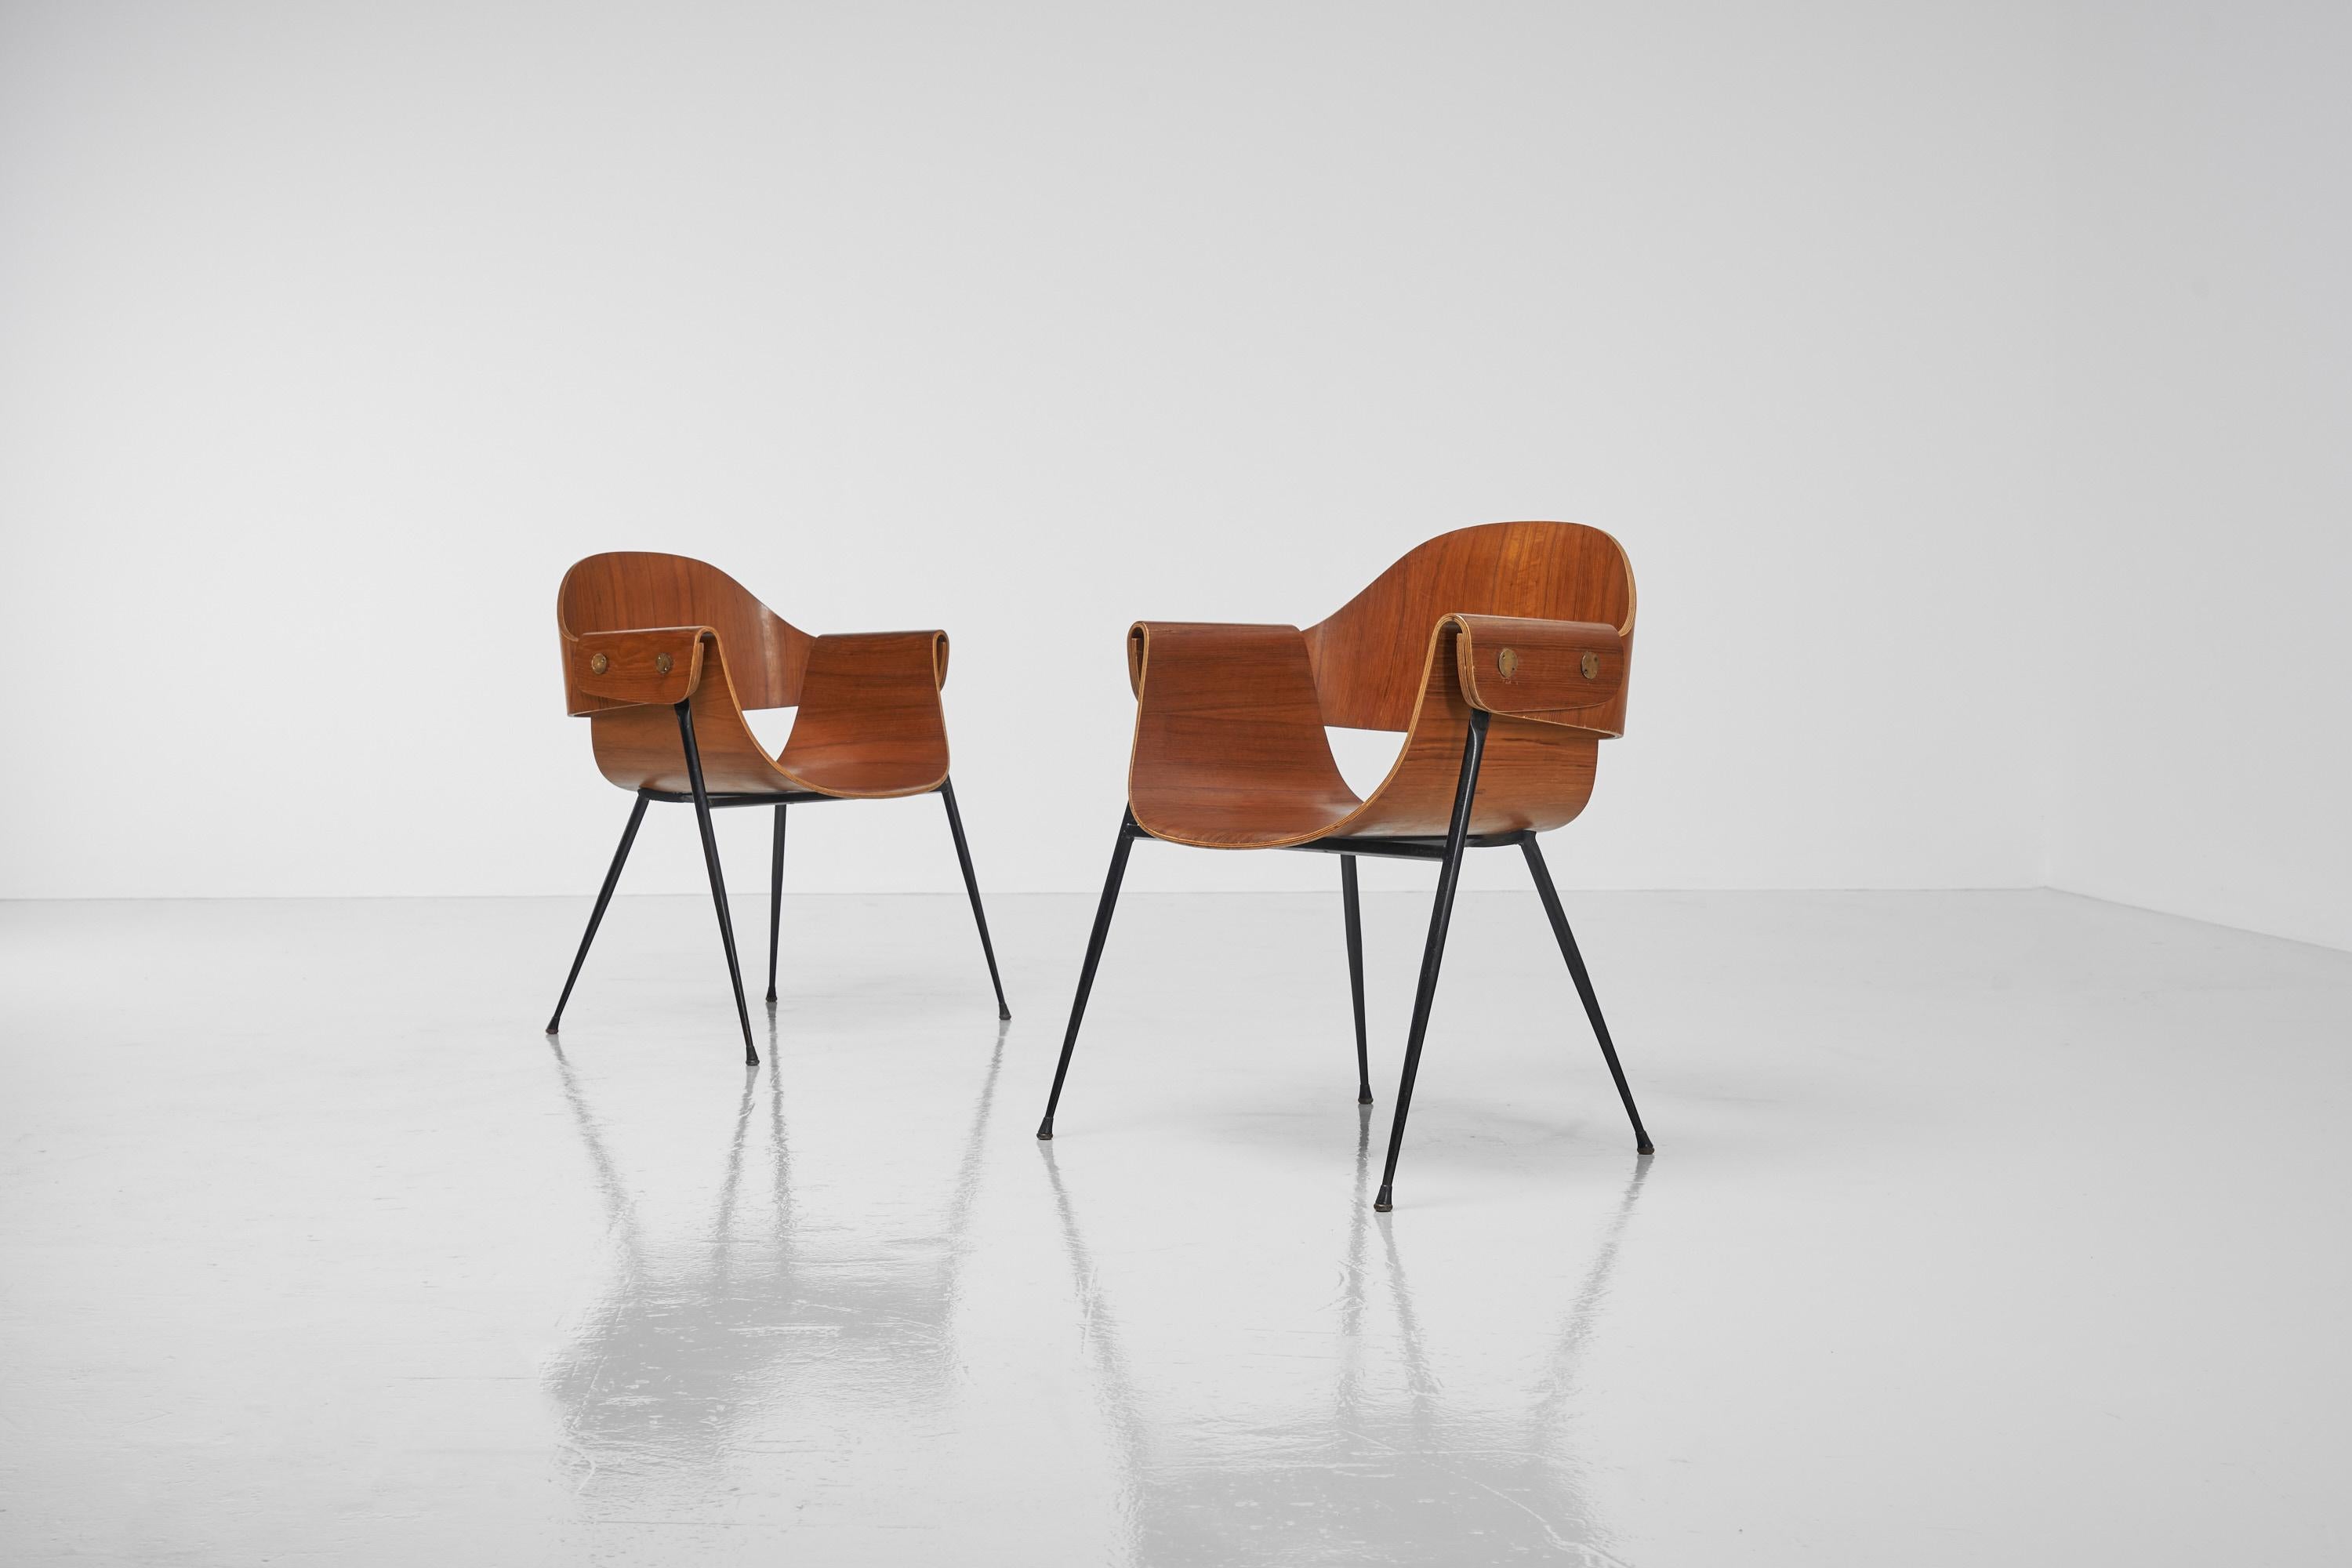 Paire de fauteuils très élégants conçus par Carlo Ratti et fabriqués par Industria Legni Curvati, Italie, années 1950. Ces fauteuils visuellement attrayants sont dotés d'une très belle assise en contreplaqué de teck aux formes extraordinaires. Outre